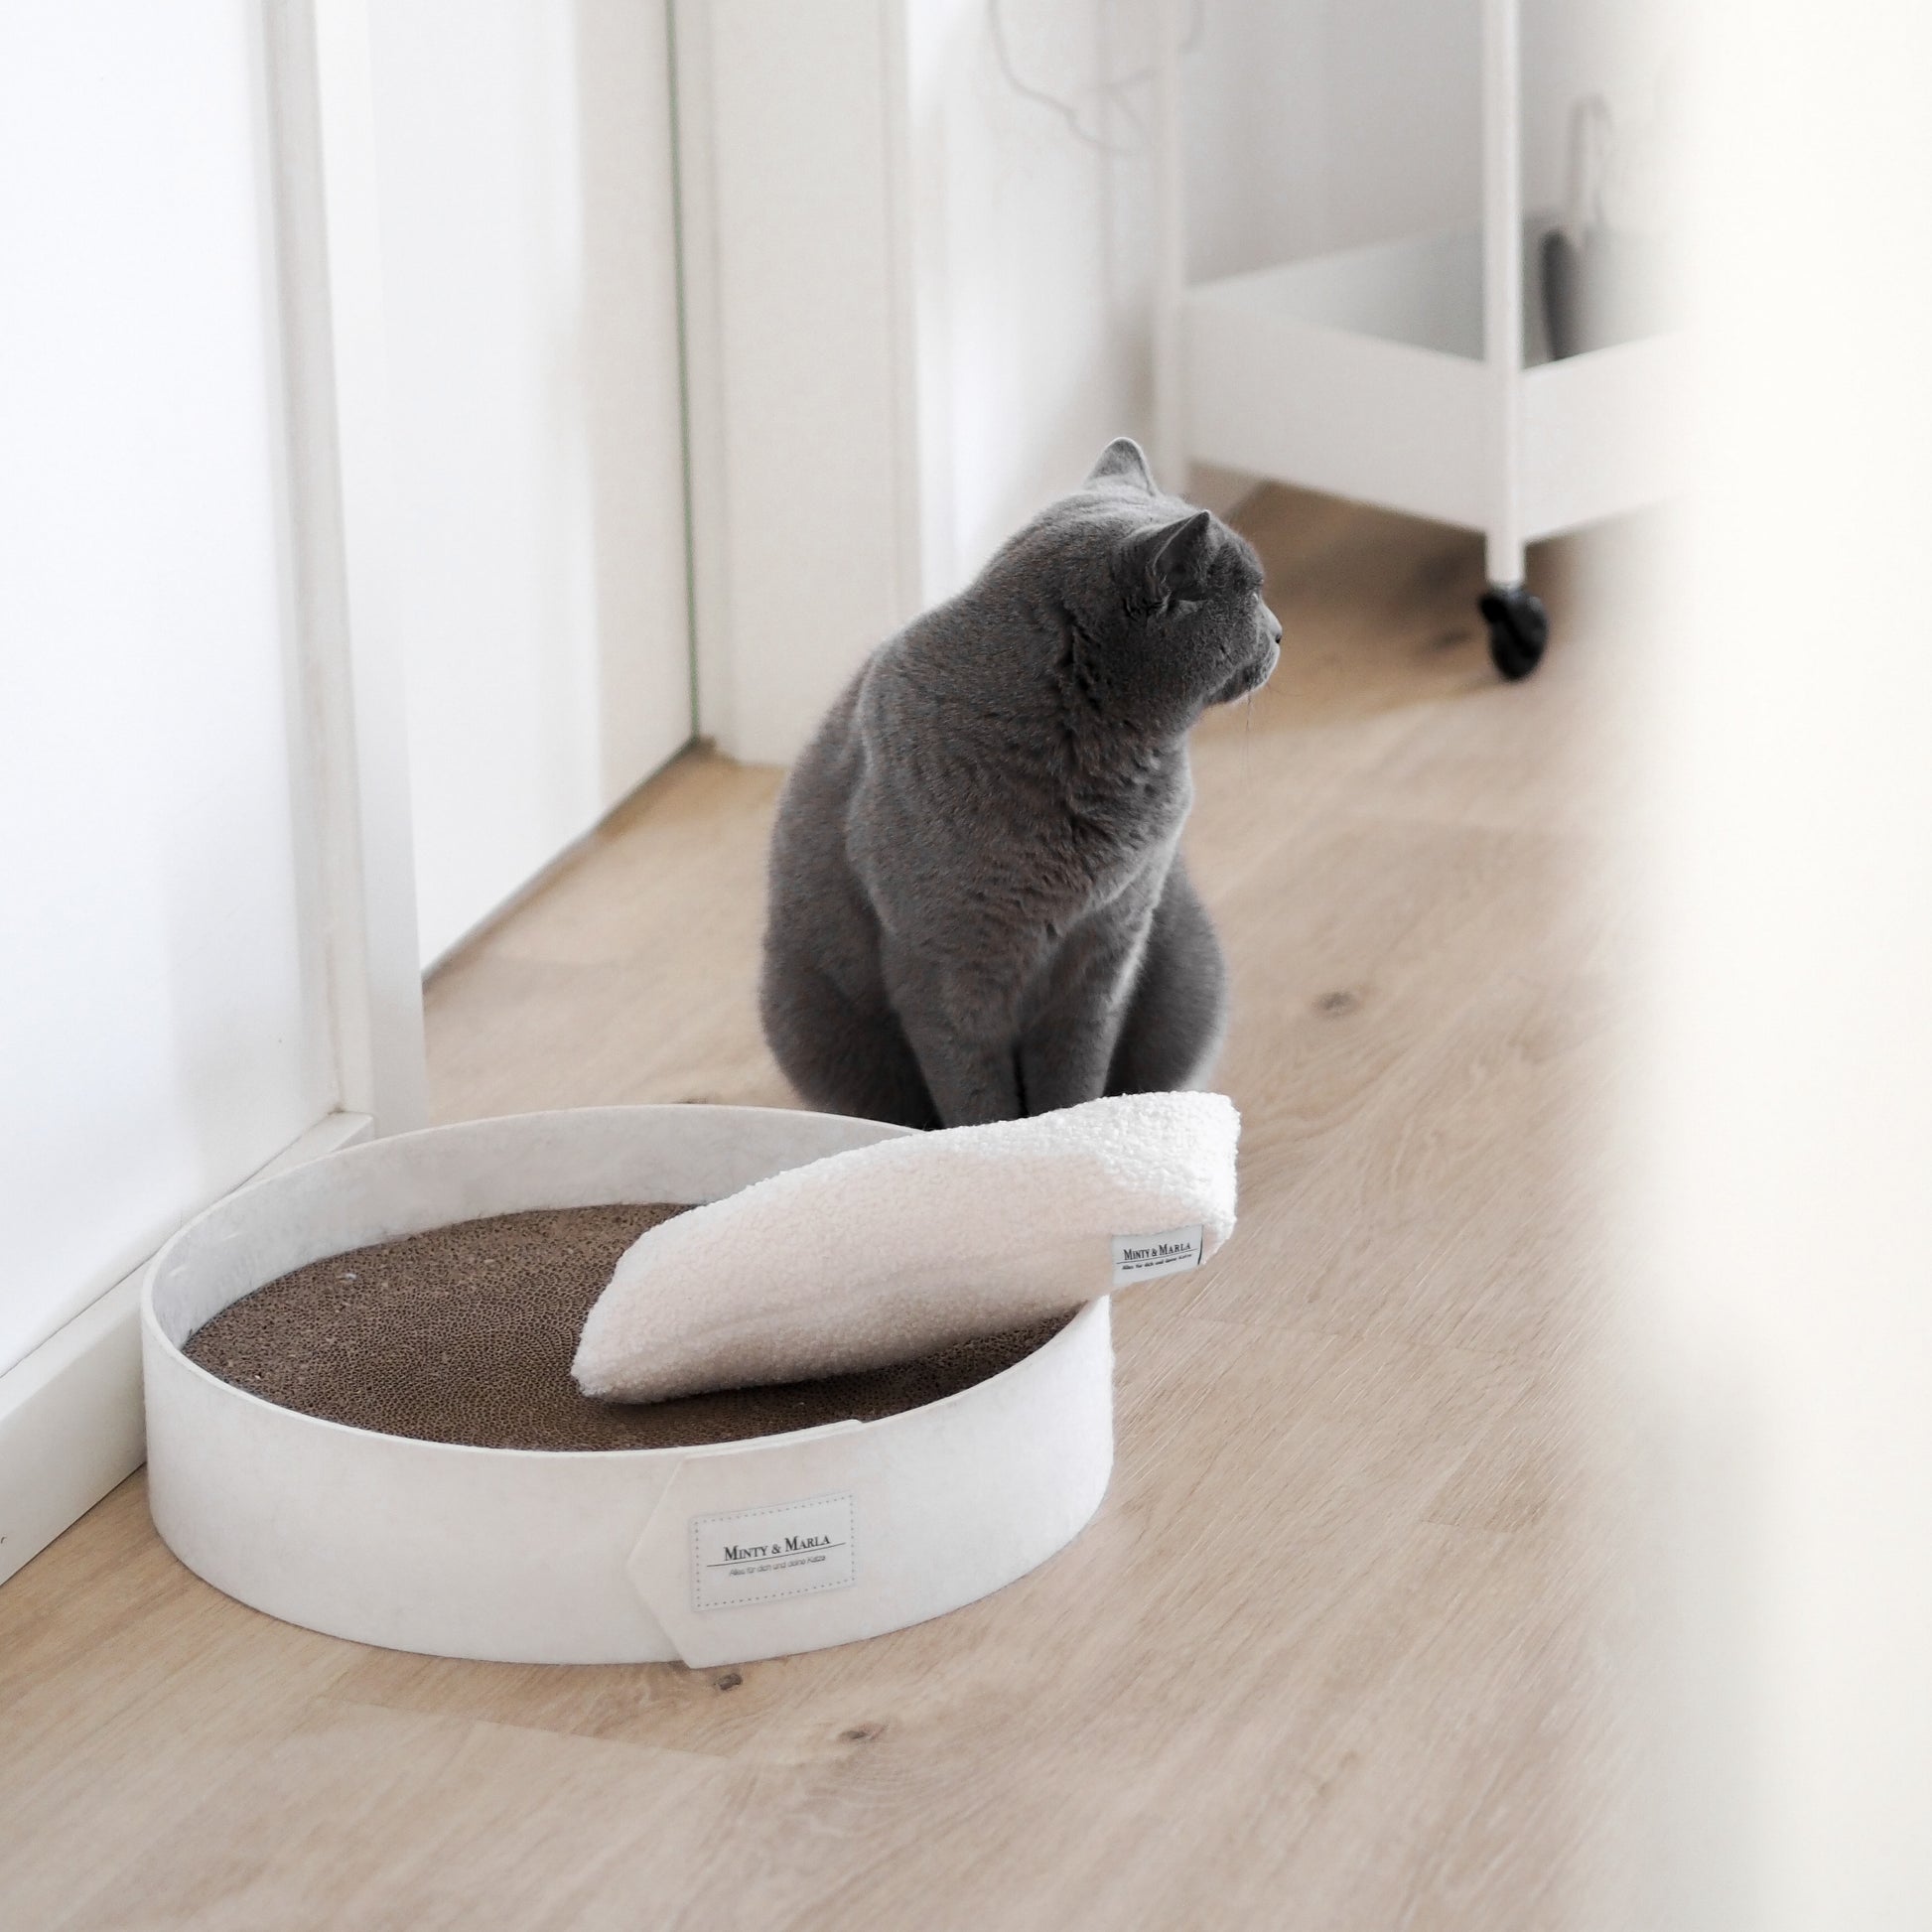 Weißes Kratzbrett für Katzen mit Katzenminzekissen zum Spielen in einer modernen Wohnung.